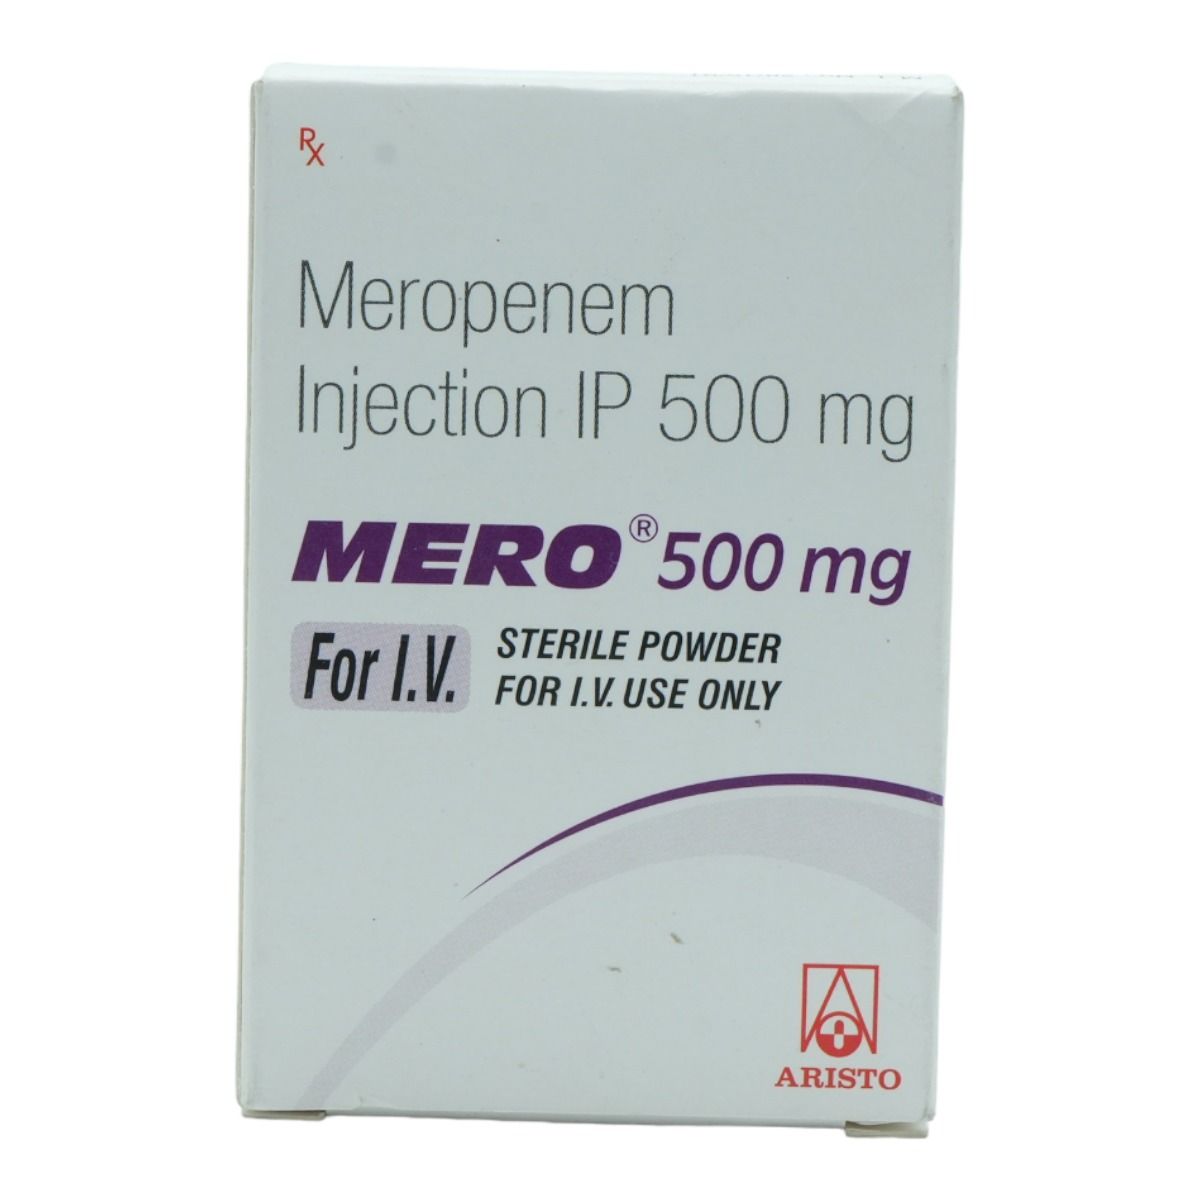 Buy Mero 500 mg Injection Online